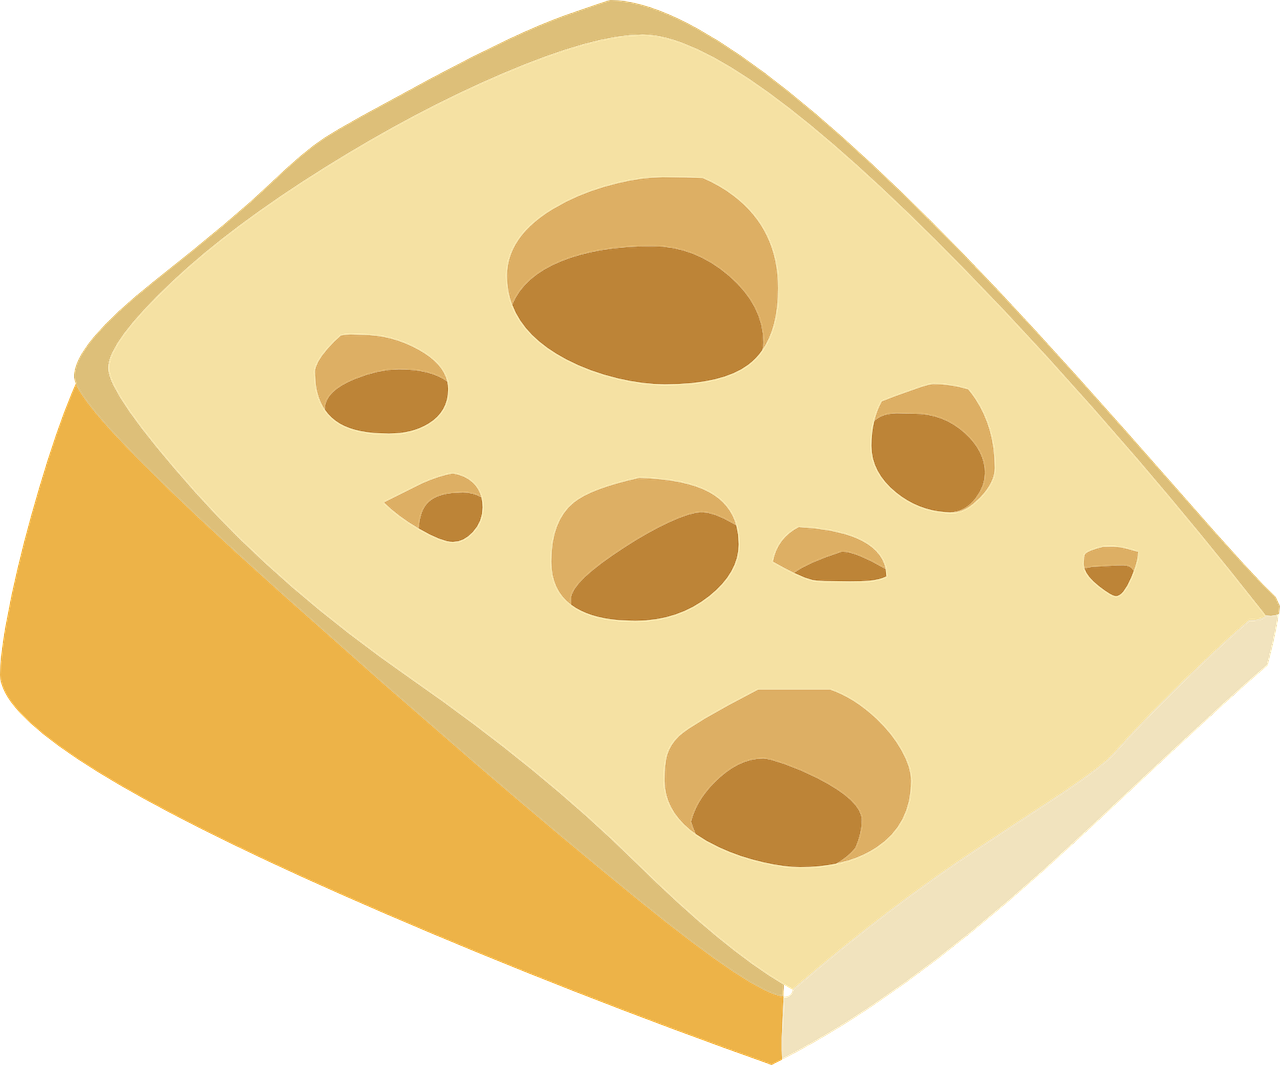 swiss cheese swiss cheese free photo